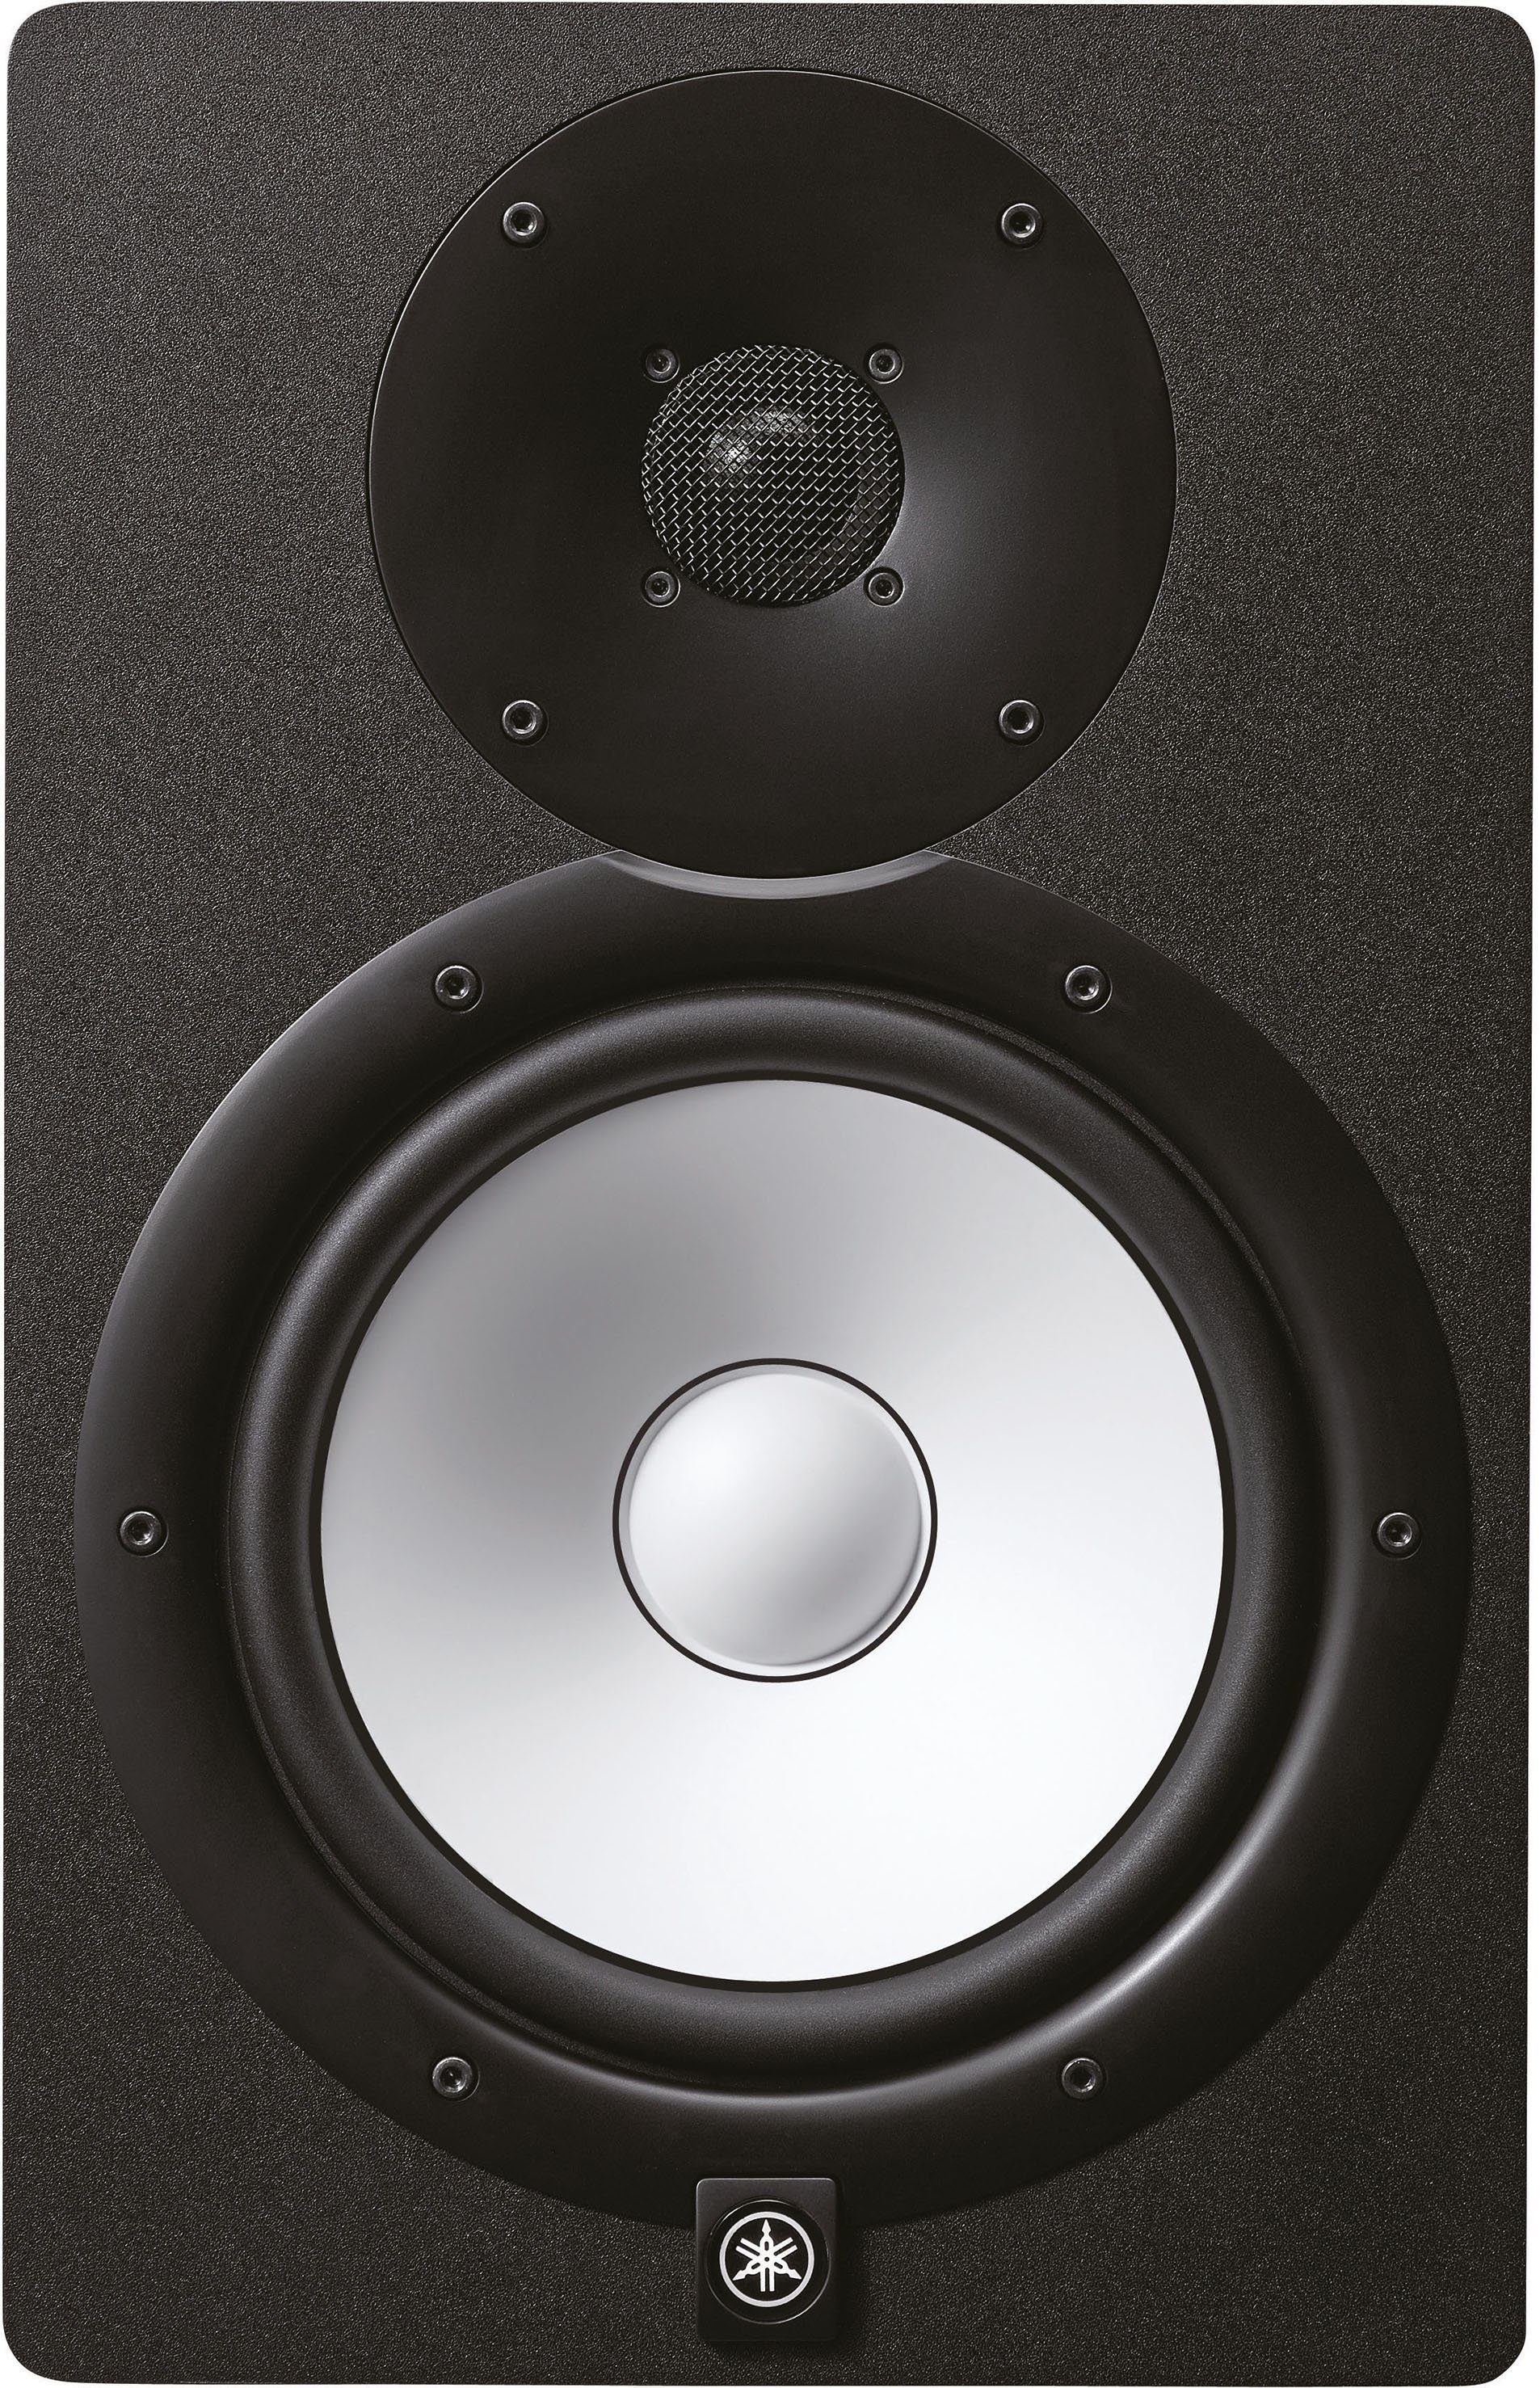 Monitor authentische Yamaha Lautsprecher Studio Klang Box HS8 Wiedergabe) (hochauflösender und